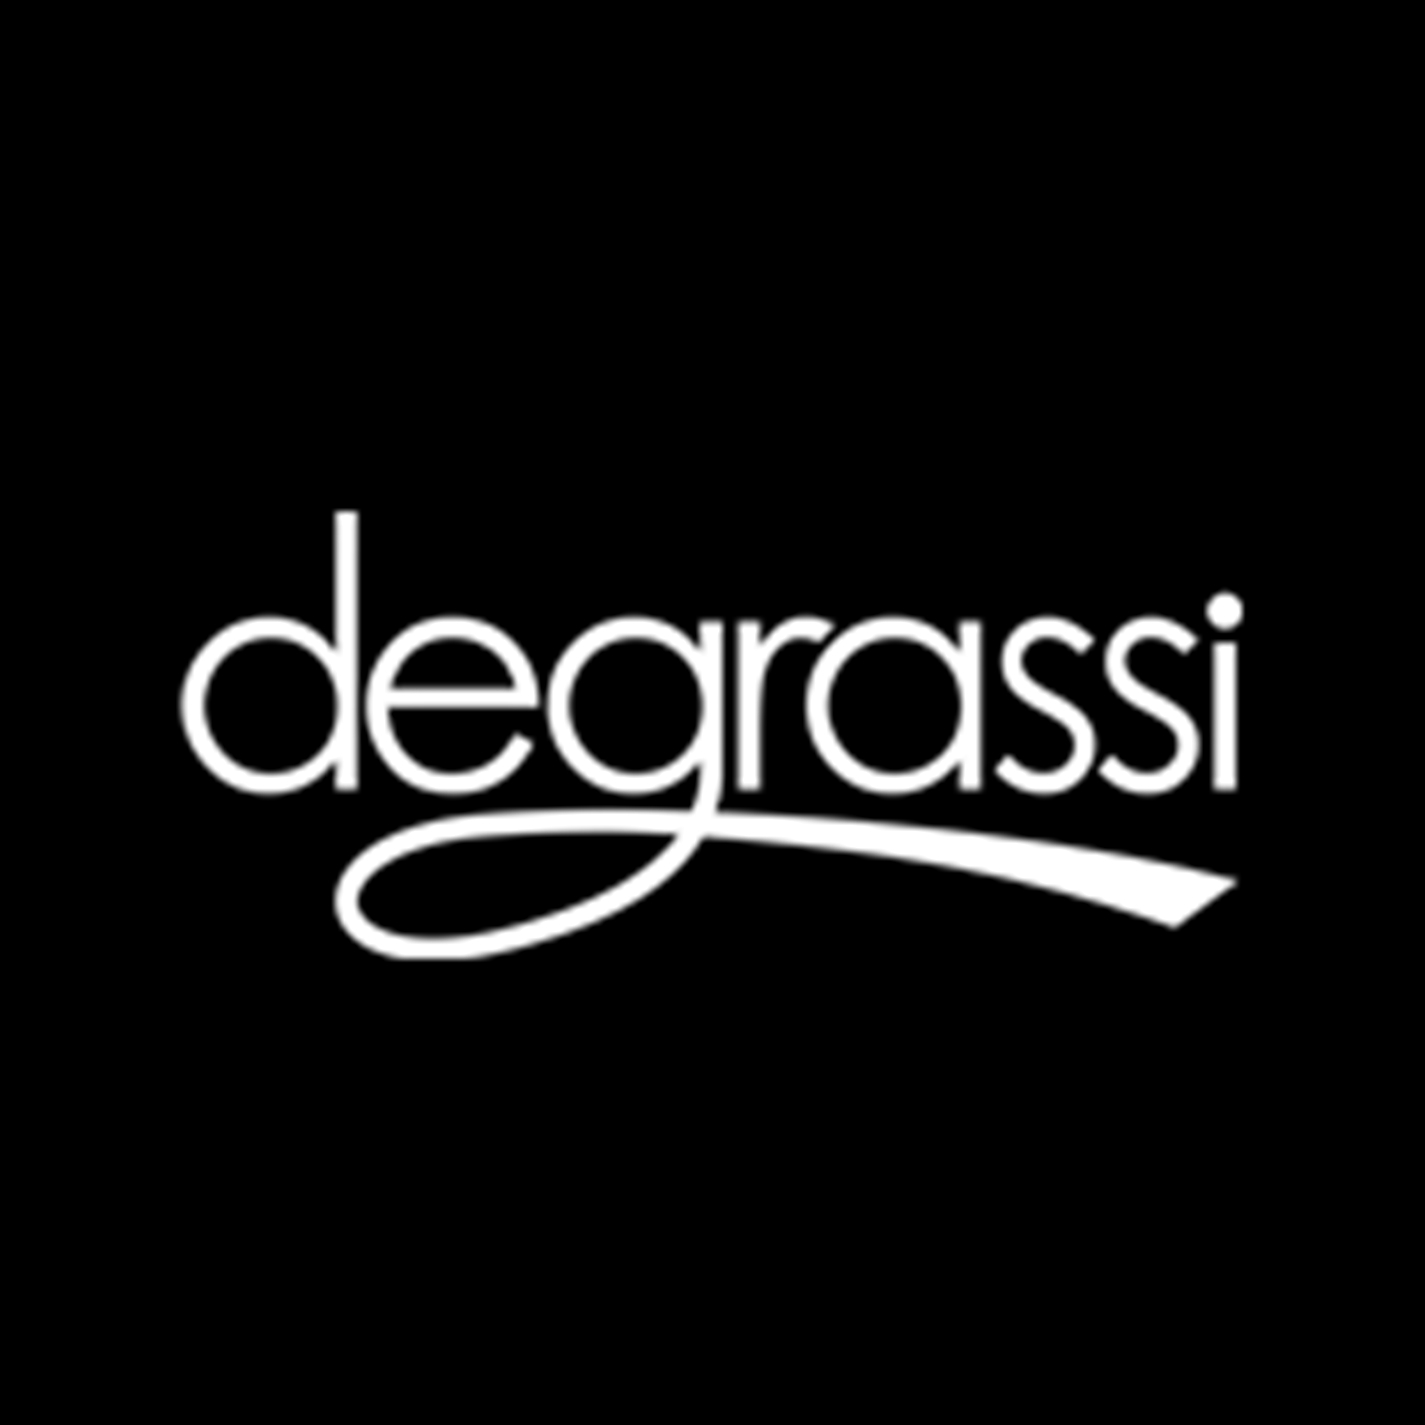 Image - Degrassi logo font.jpg - Degrassi Wiki